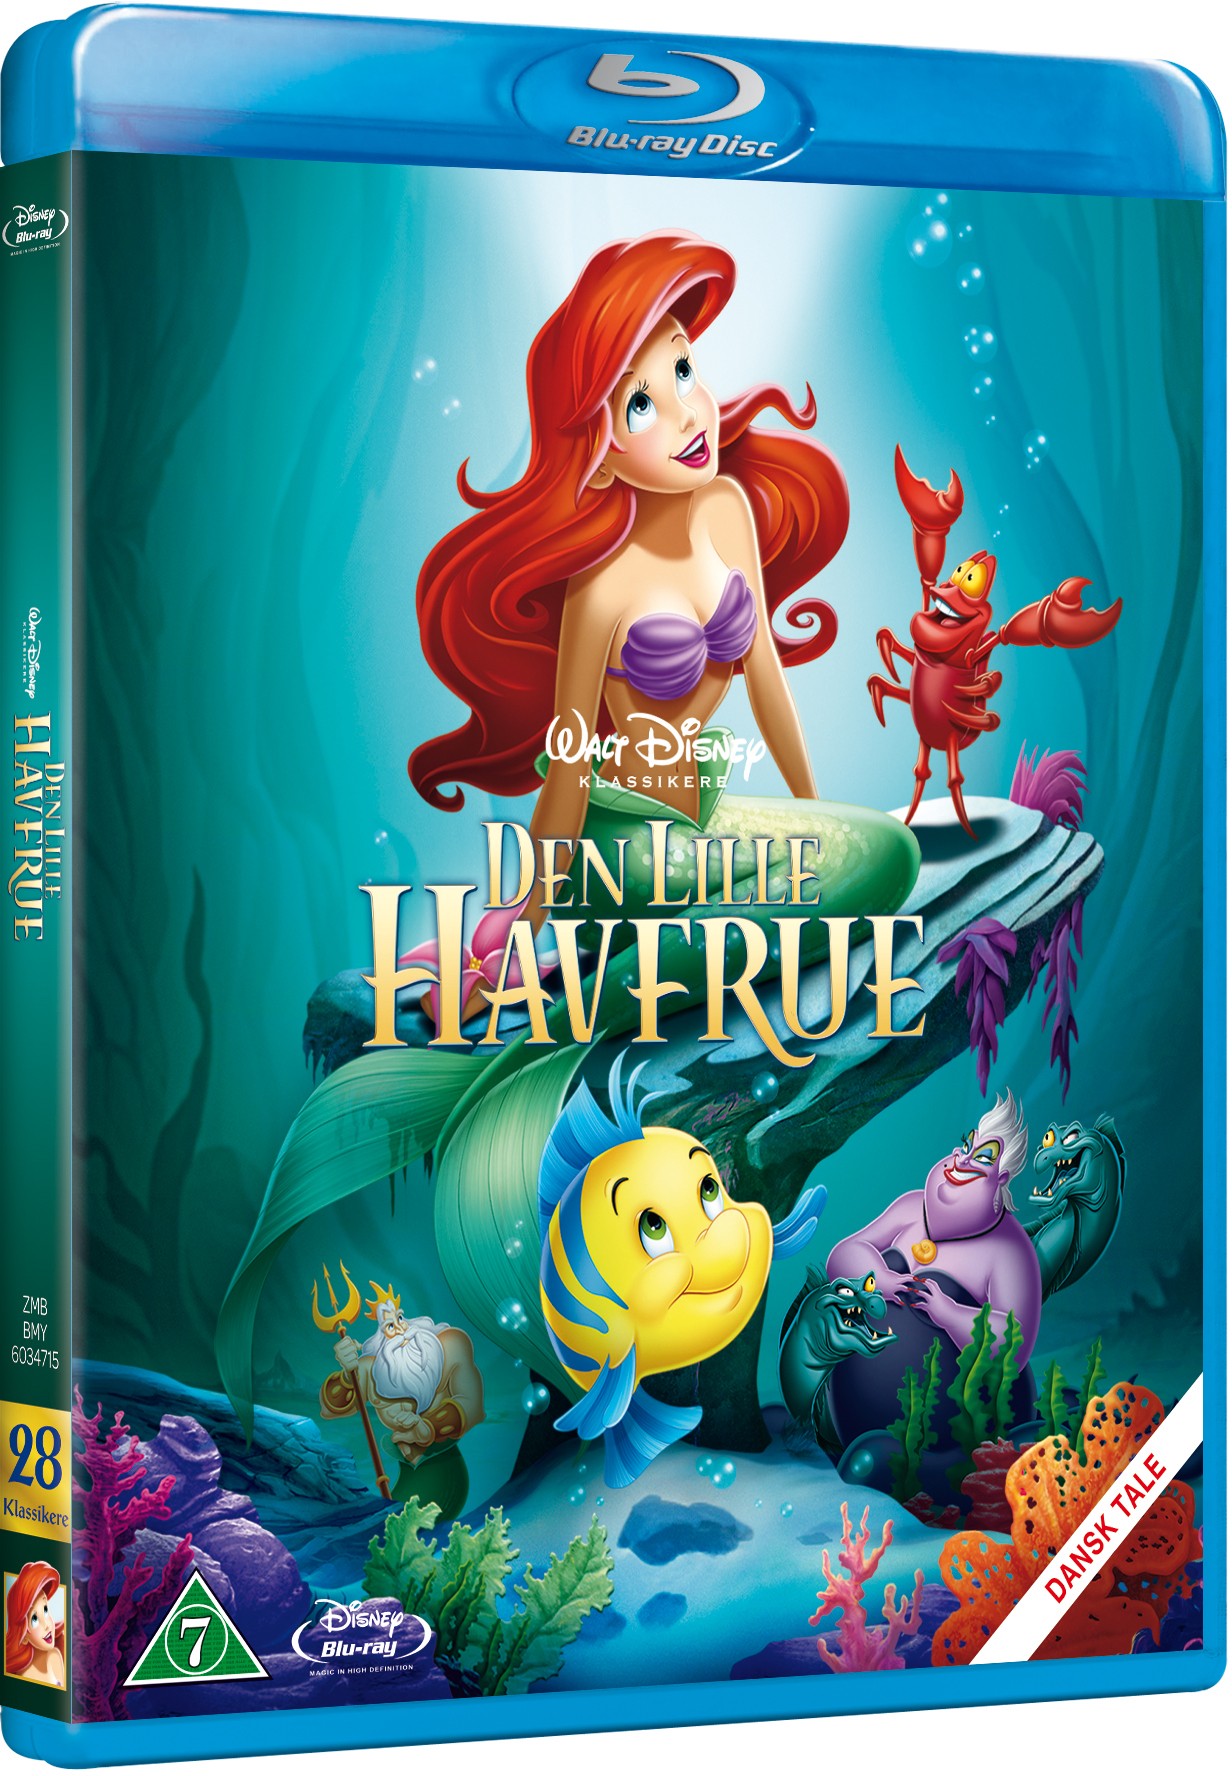 Osta Disneys The Little Mermaid (BluRay)